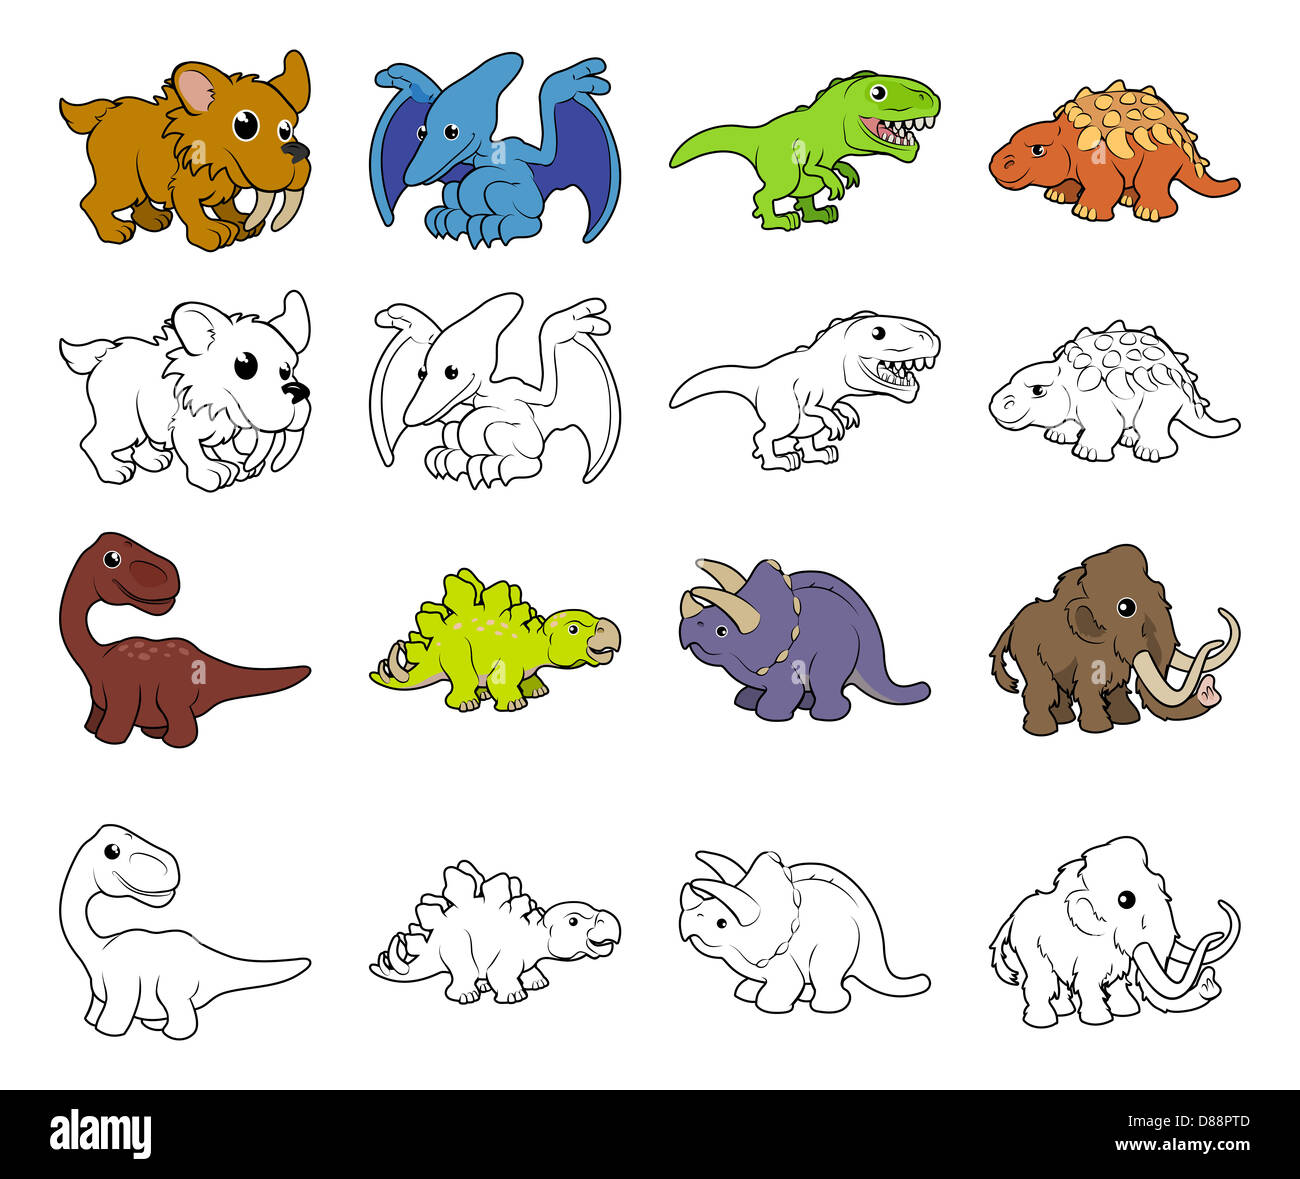 Una serie di cartoni animati di animali preistorici e le illustrazioni di dinosauri. A colori e in bianco e nero un profilo bianco versioni. Foto Stock